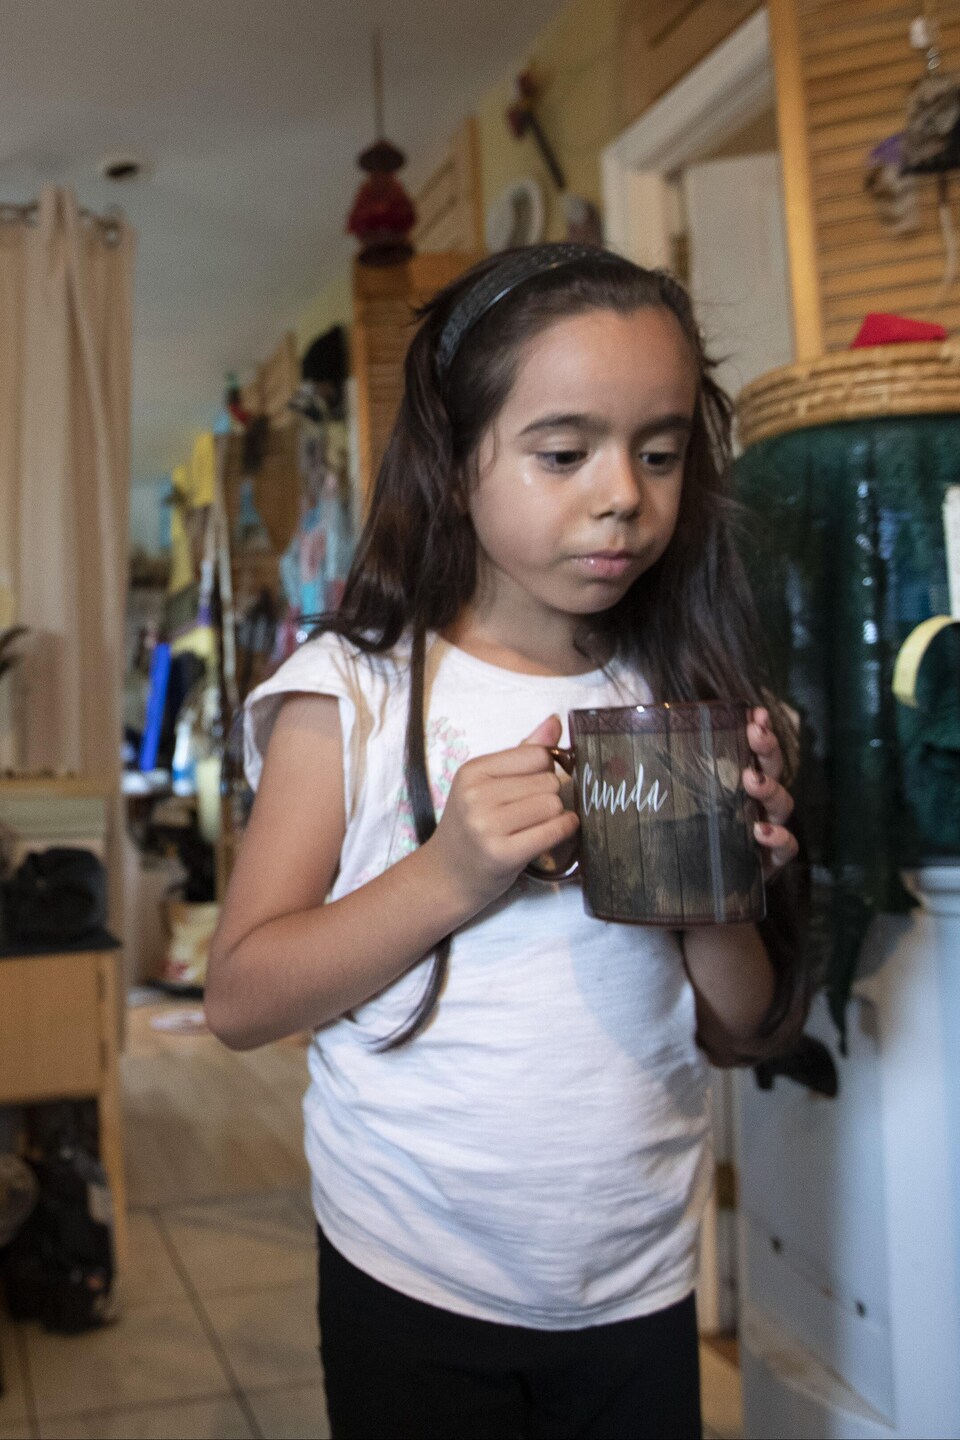 La petite Roseanna, qui vit avec sa mère Glenda Stevens à Kitigan Zibi, a toujours bu de l'eau en bouteille.
